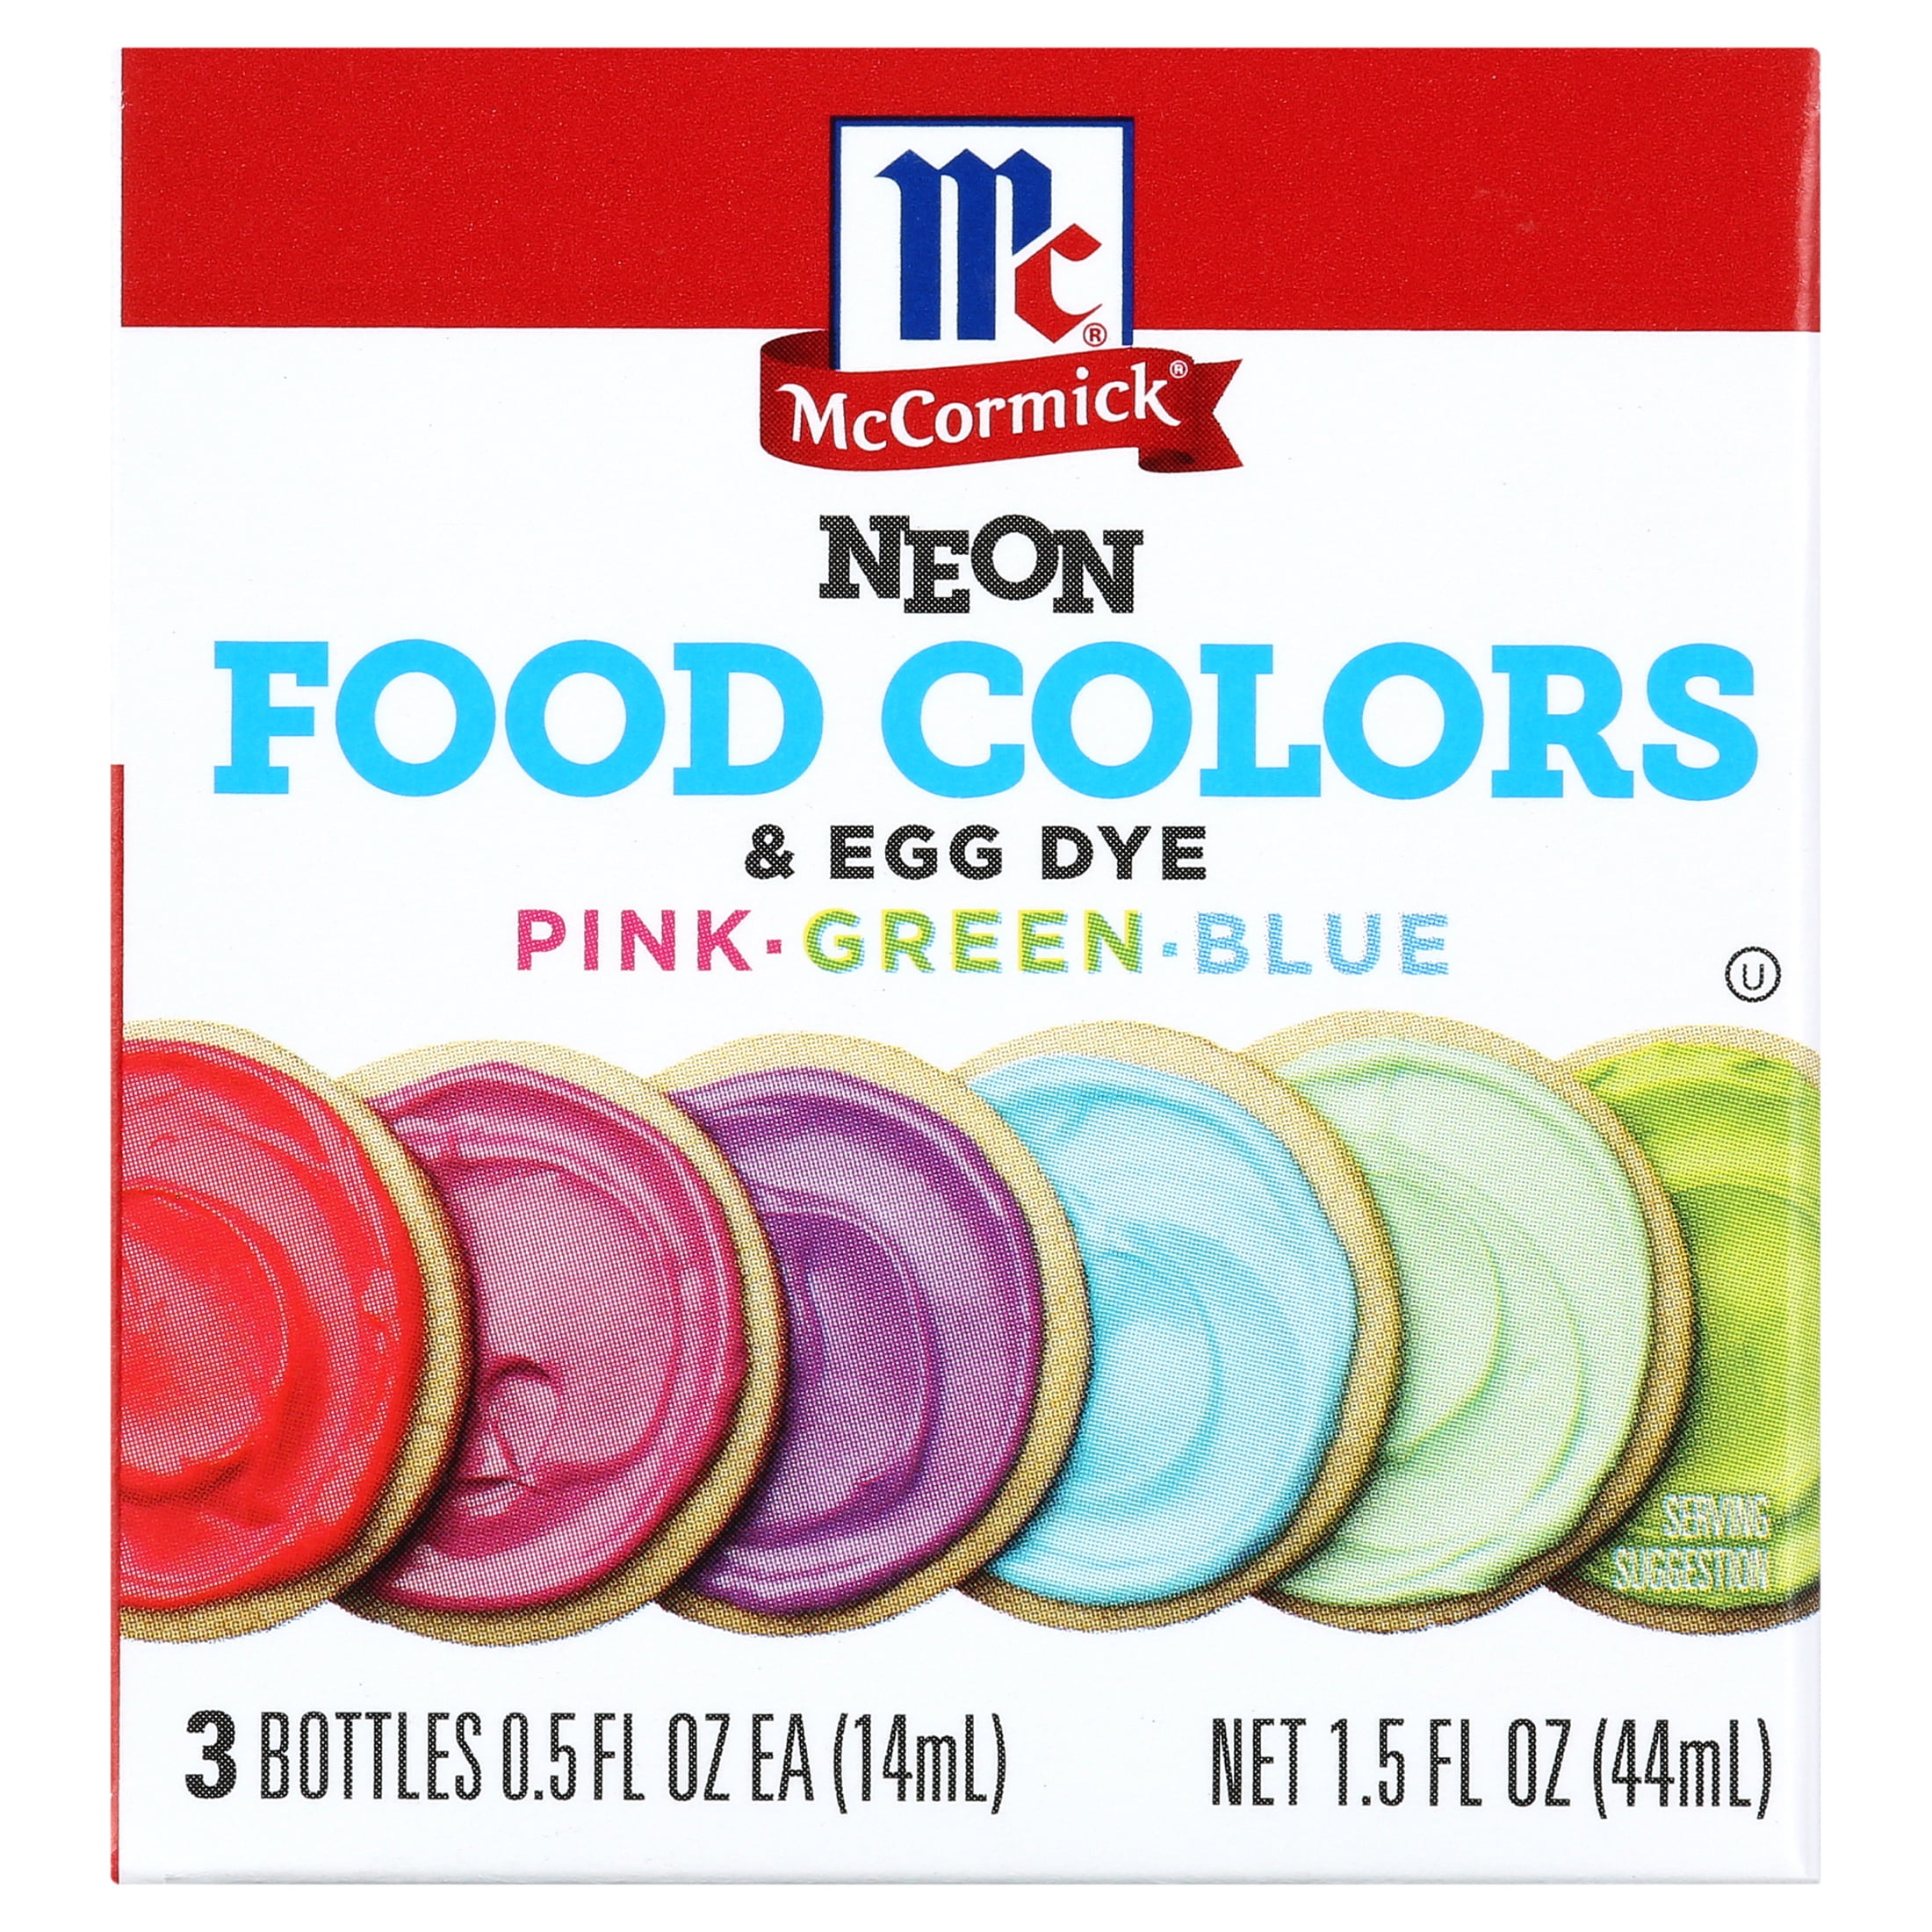 McCormick Neon Food Colors & Egg Dye (Pack of 6), 6 packs - Foods Co.